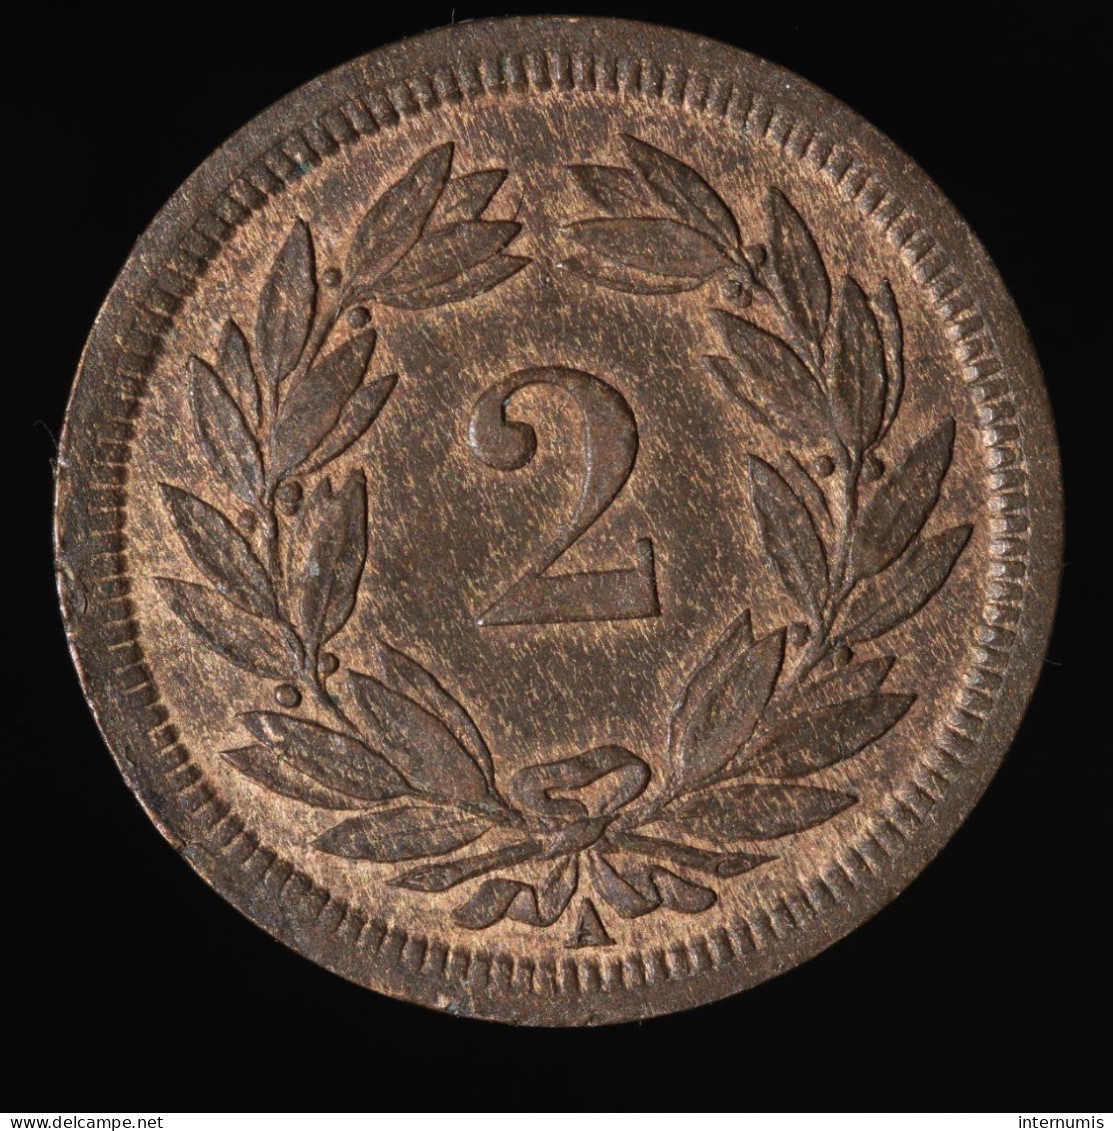  Suisse / Switzerland, , 2 Rappen, 1850, Paris, Bronze, NC (UNC),
KM#4.1 - 1 Franc